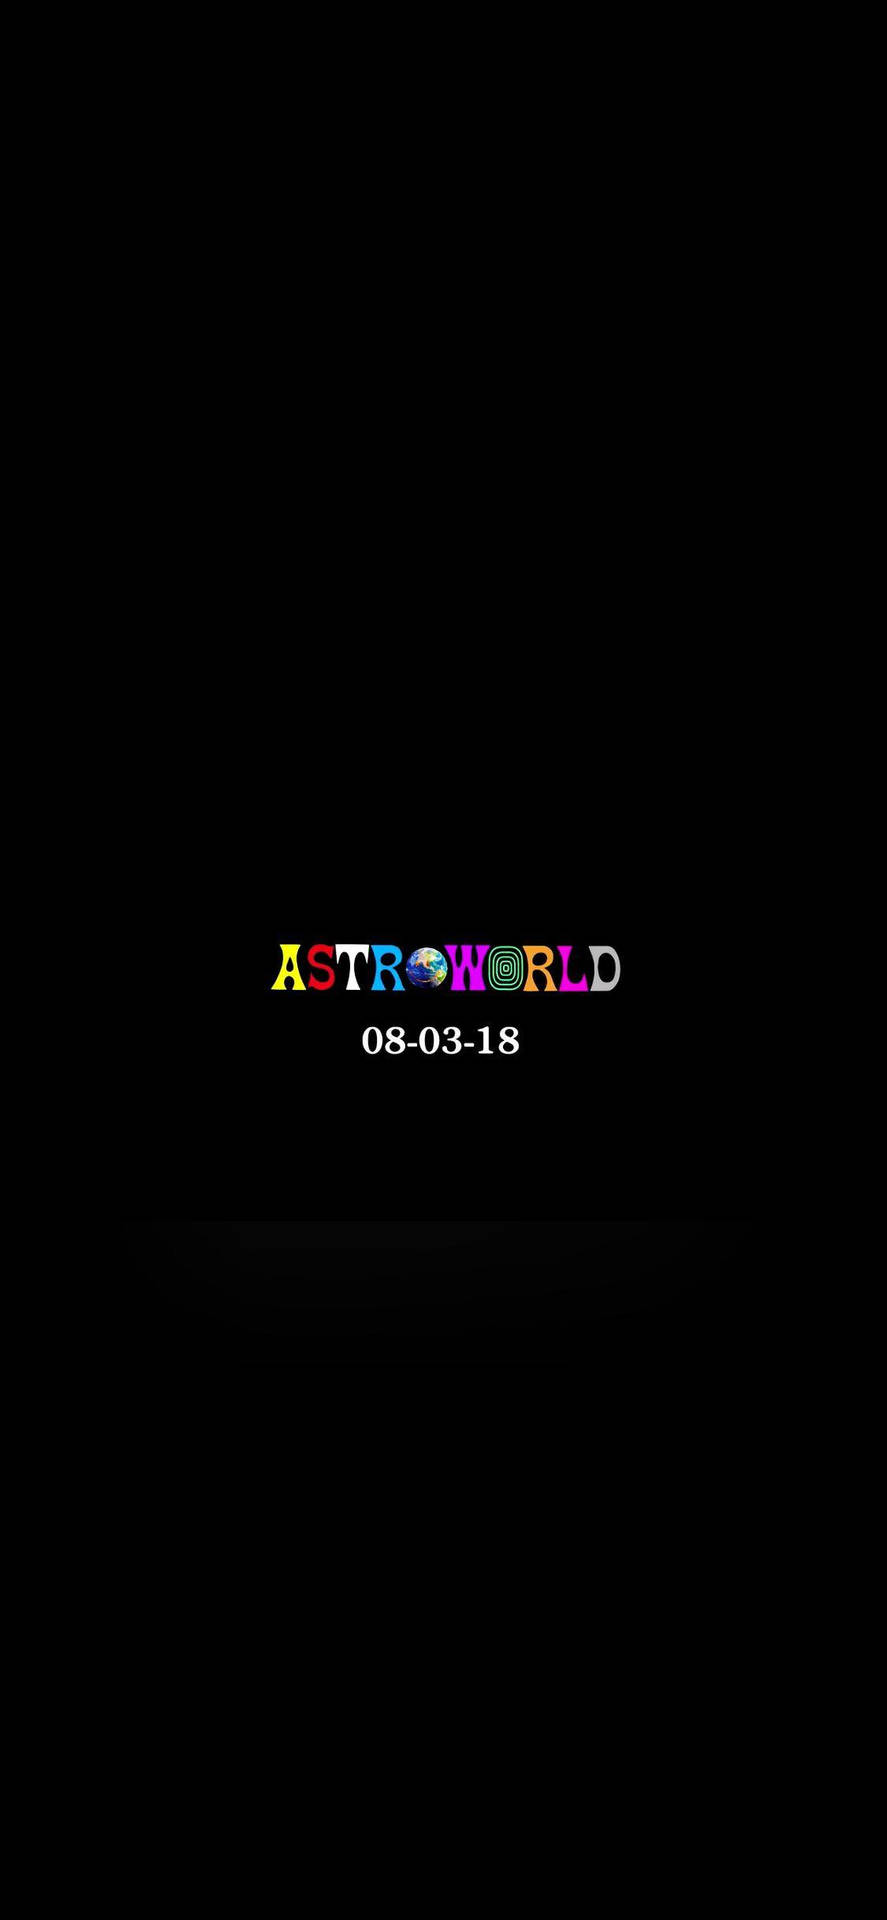 Travis Scott Astroworld Concert Date Background